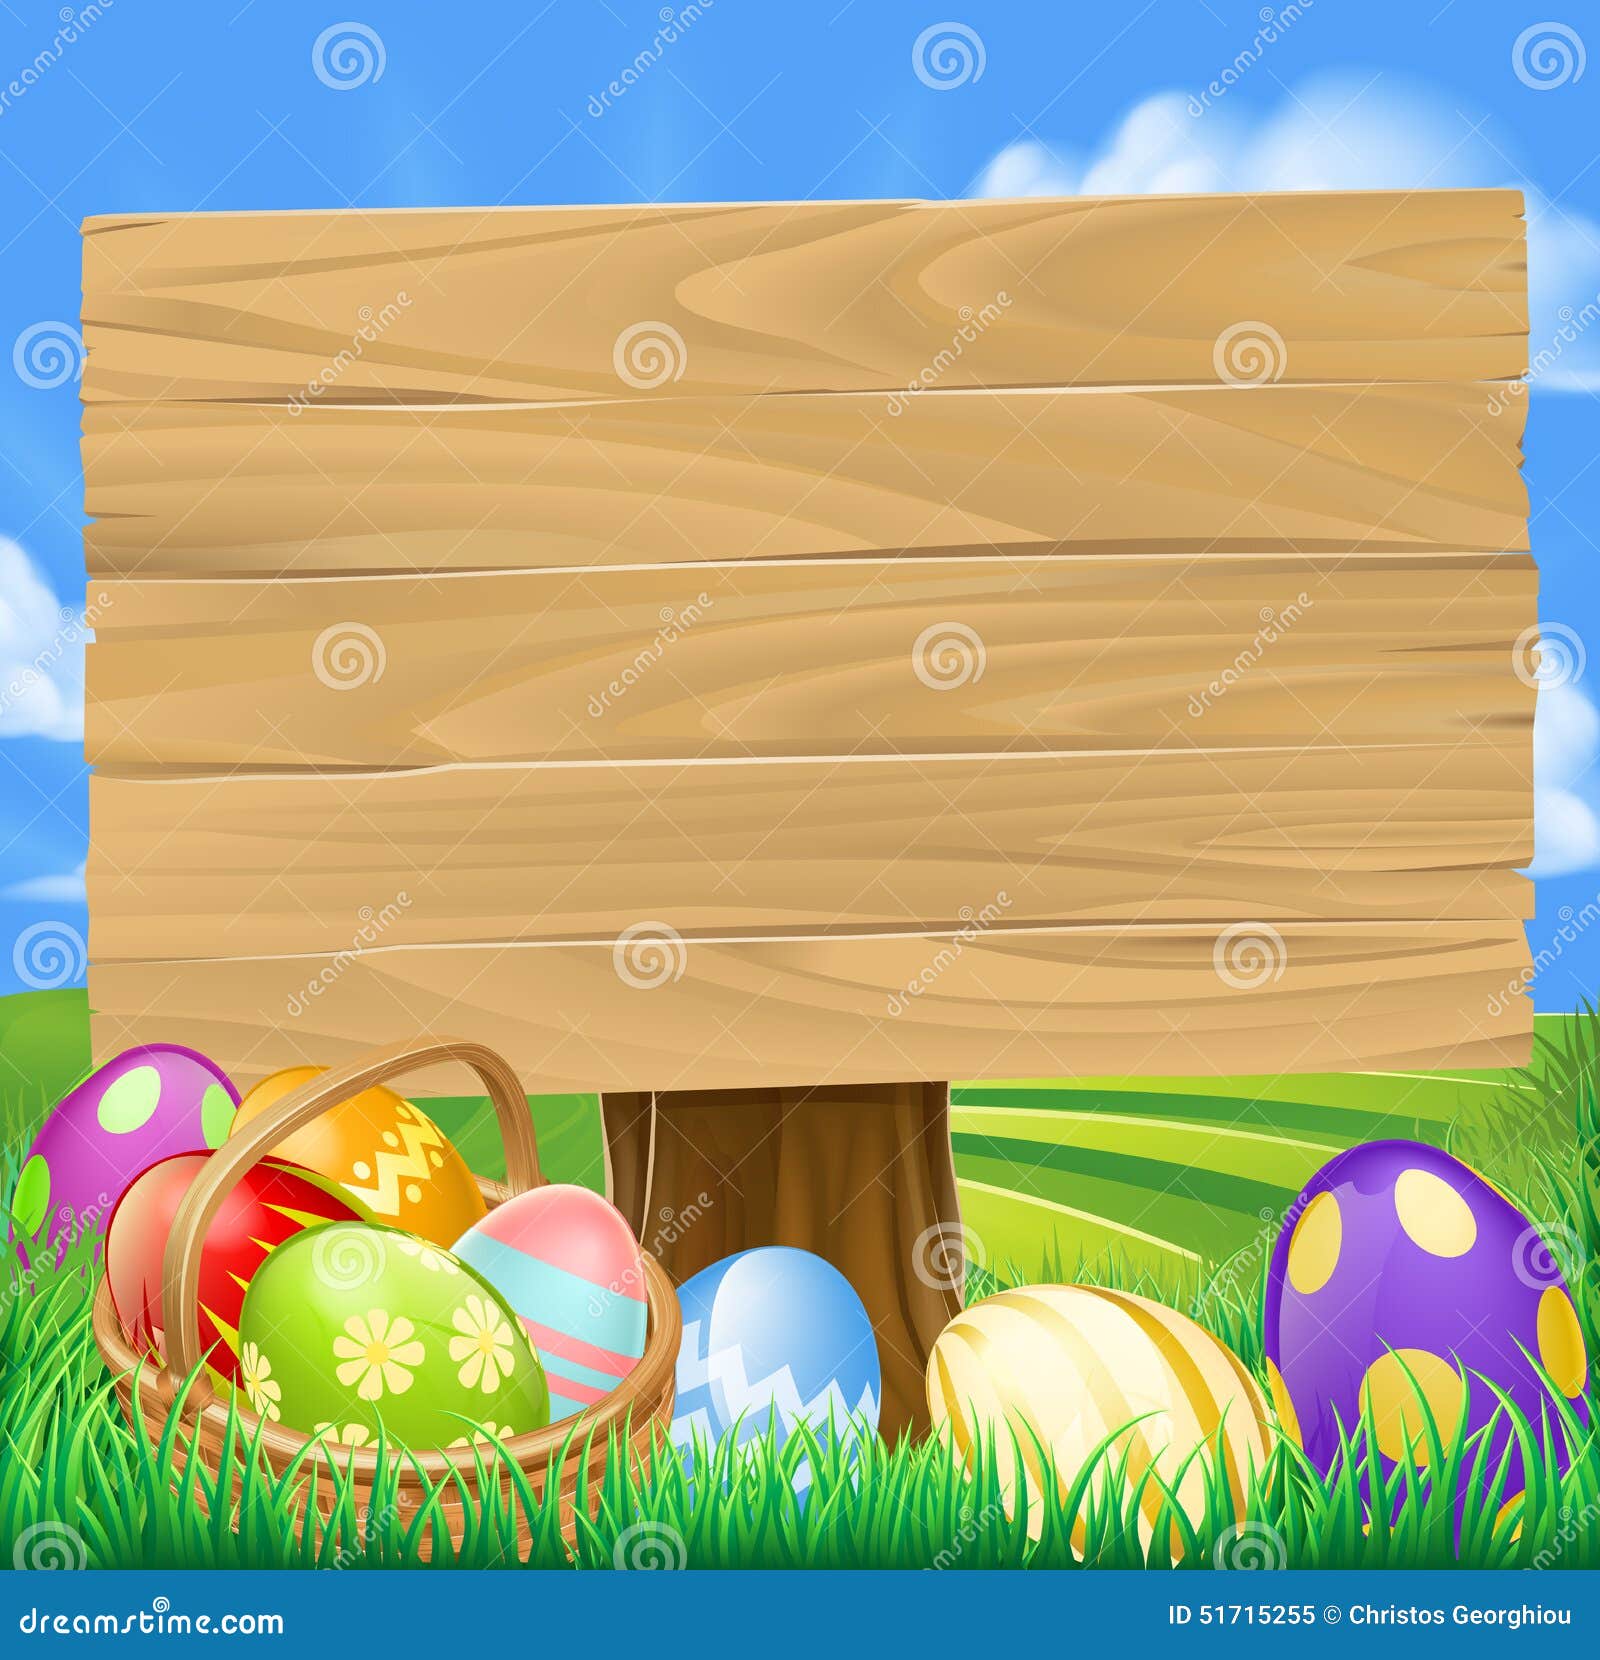 Easter Egg Hunt Cartoon stock vector. Illustration of eater - 51715255